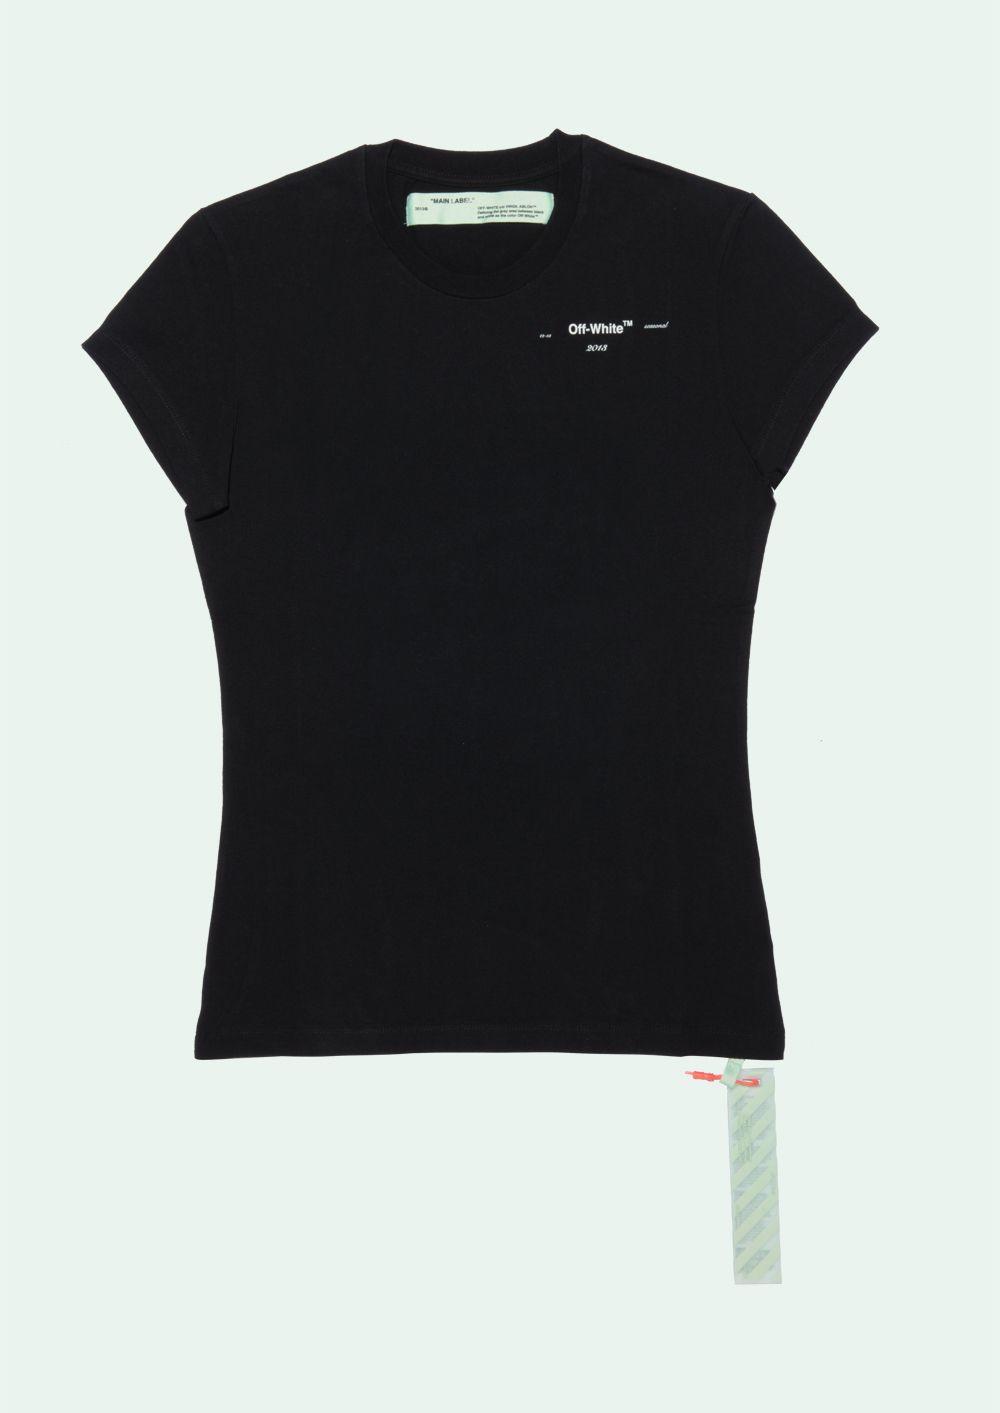 Black Off White Brand Logo - OFF WHITE - T-Shirt S/S - OffWhite